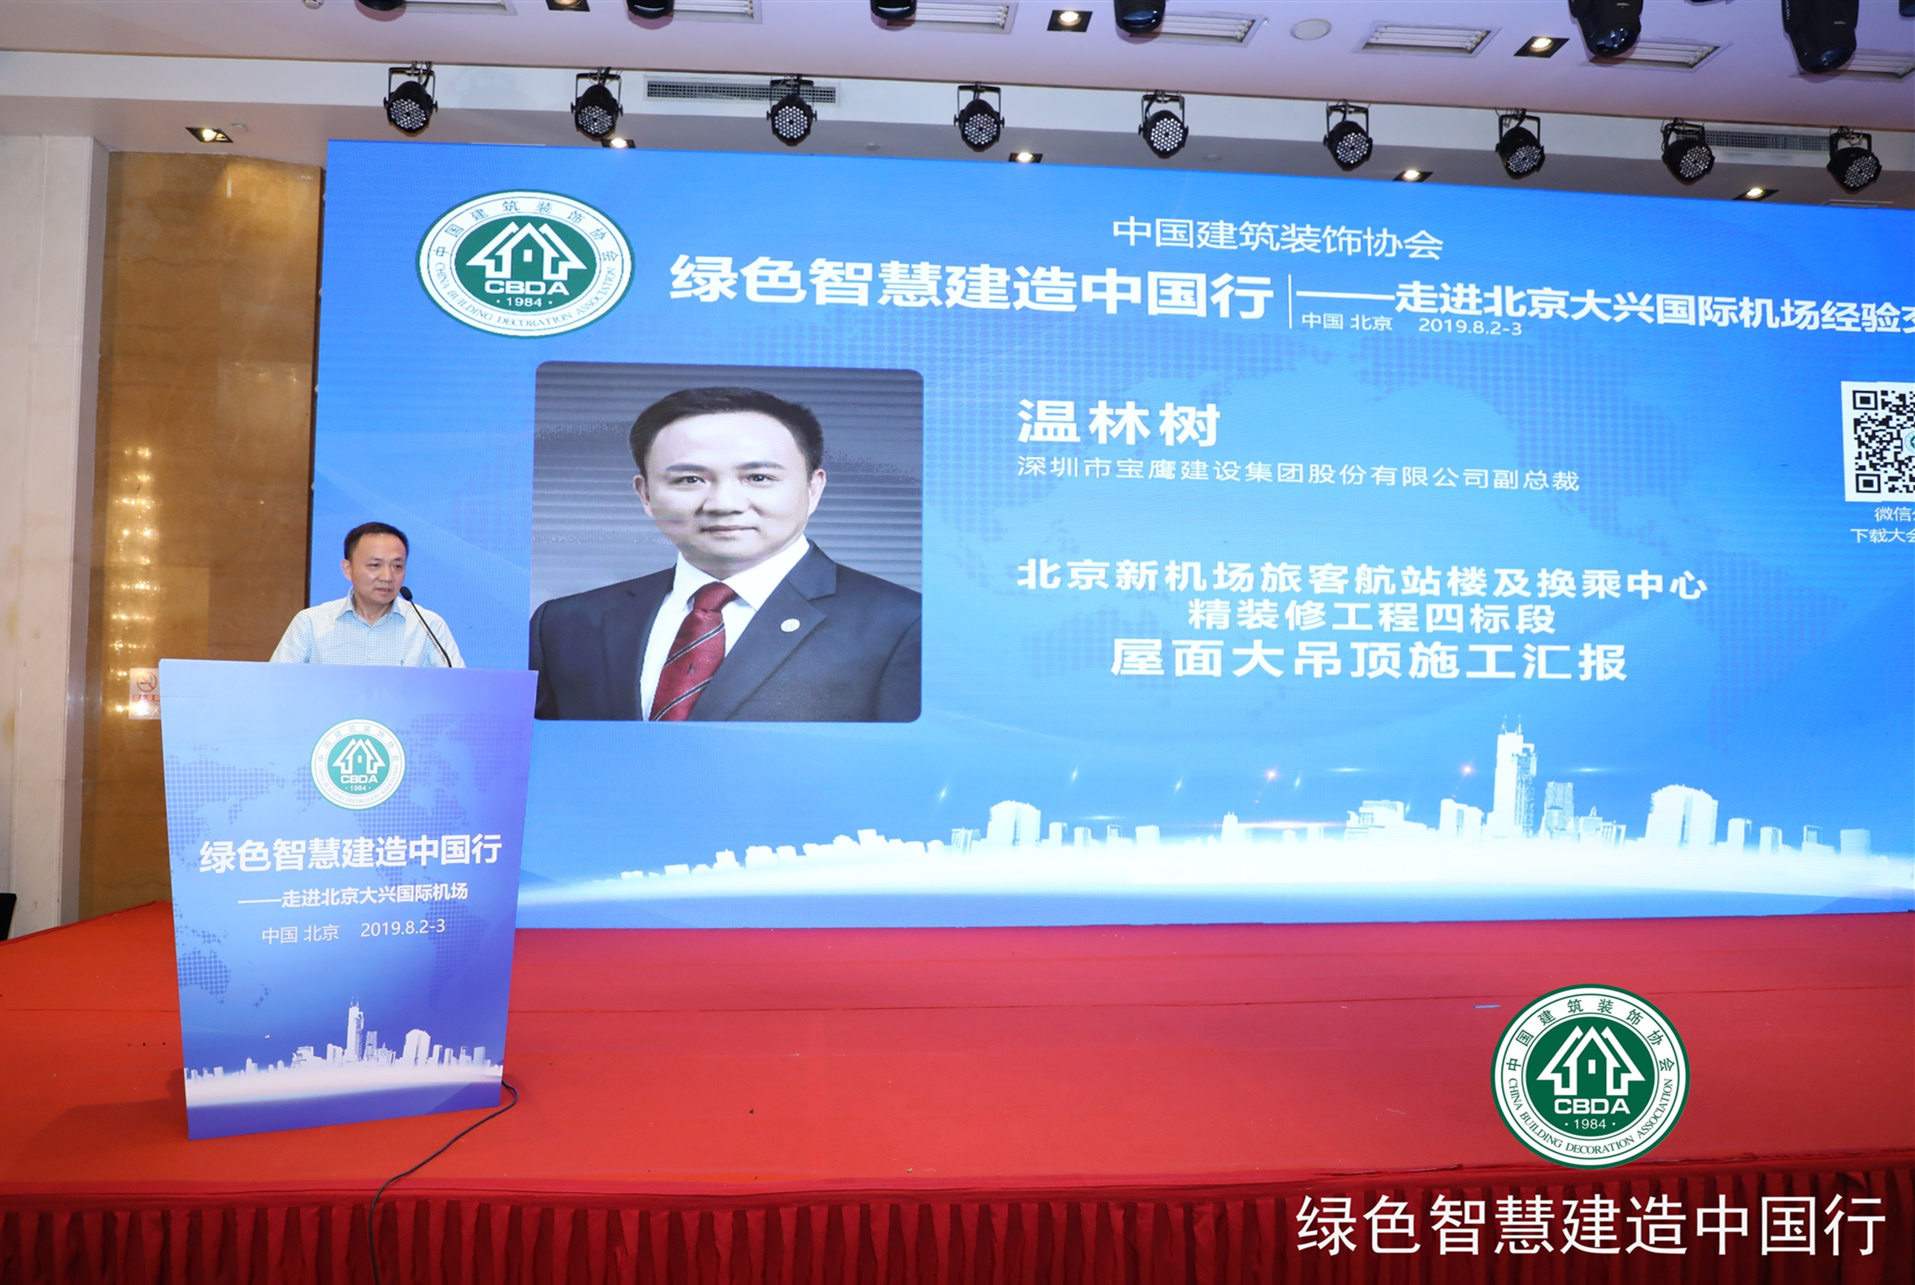 寶鷹集團副總裁溫林樹應邀分享北京大興國際機場項目建設經驗